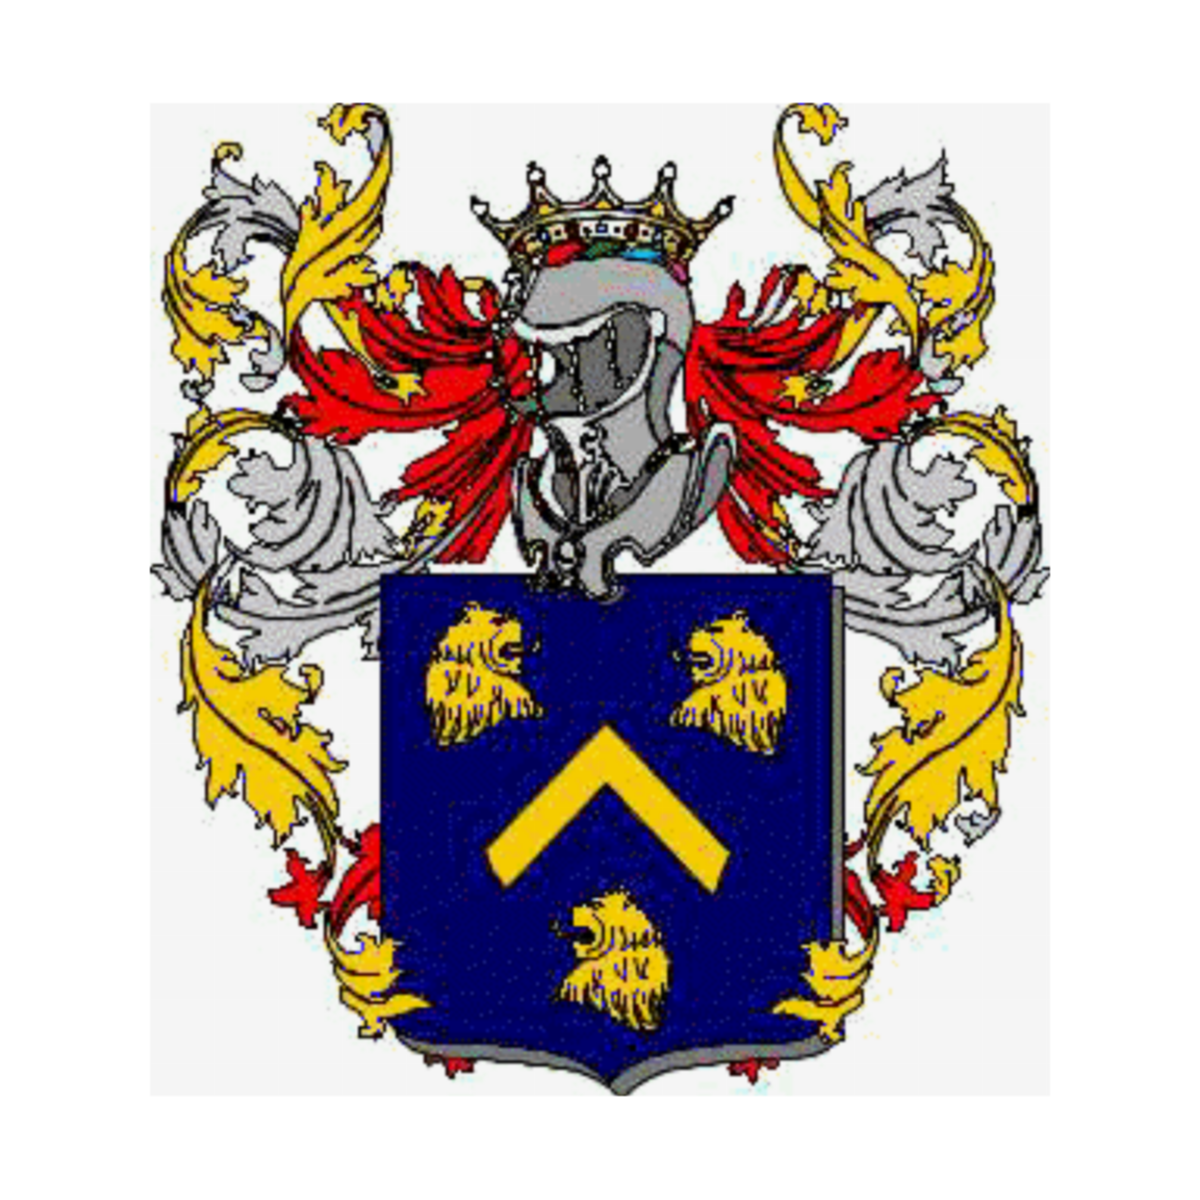 Wappen der Familie La Rotonda